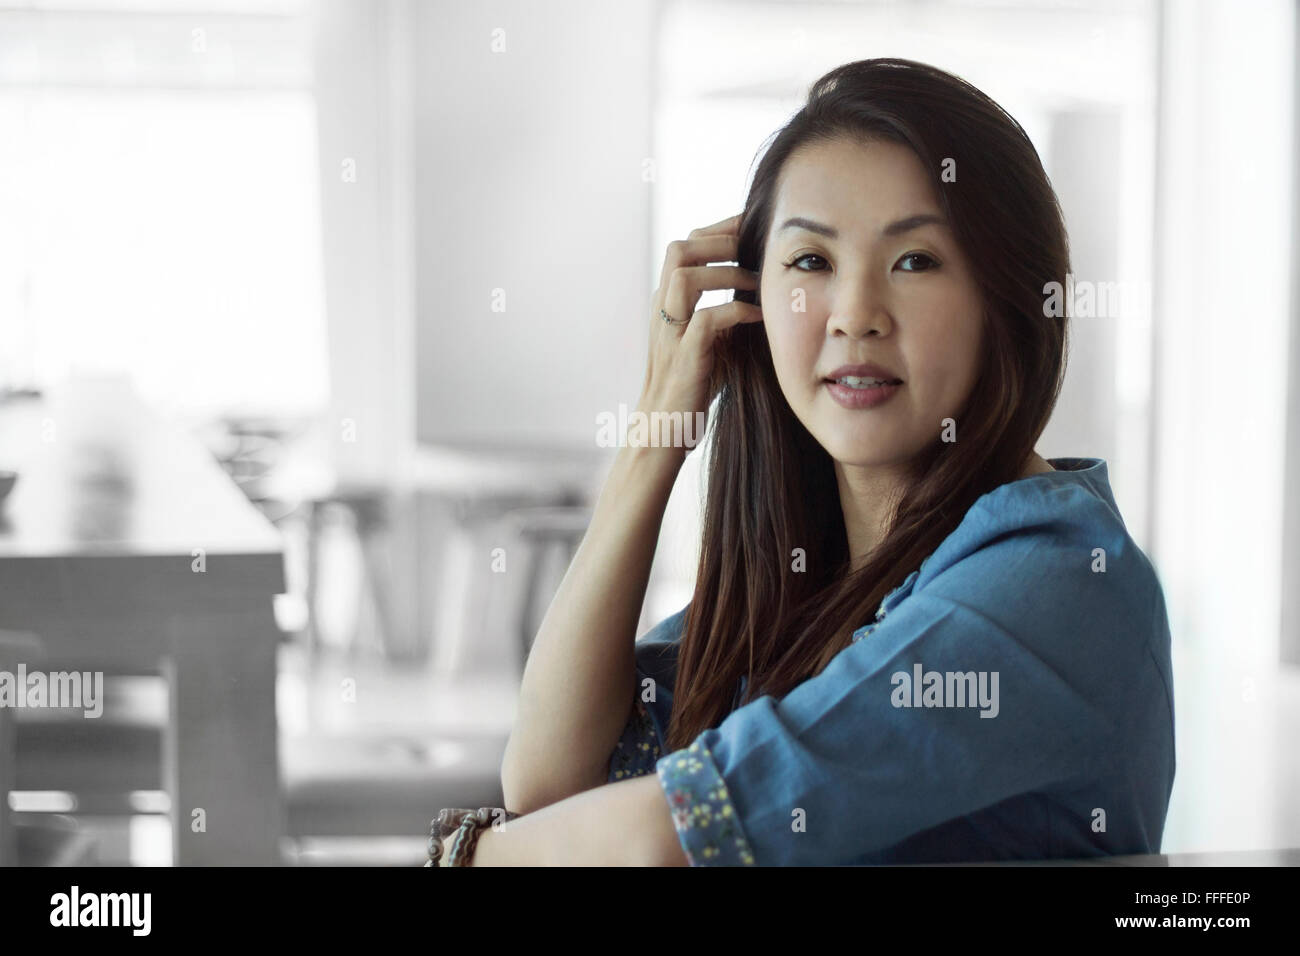 Femme d'origine asiatique belles femmes portraits, jeune chinoise se détendre dans le café de style de vie Banque D'Images